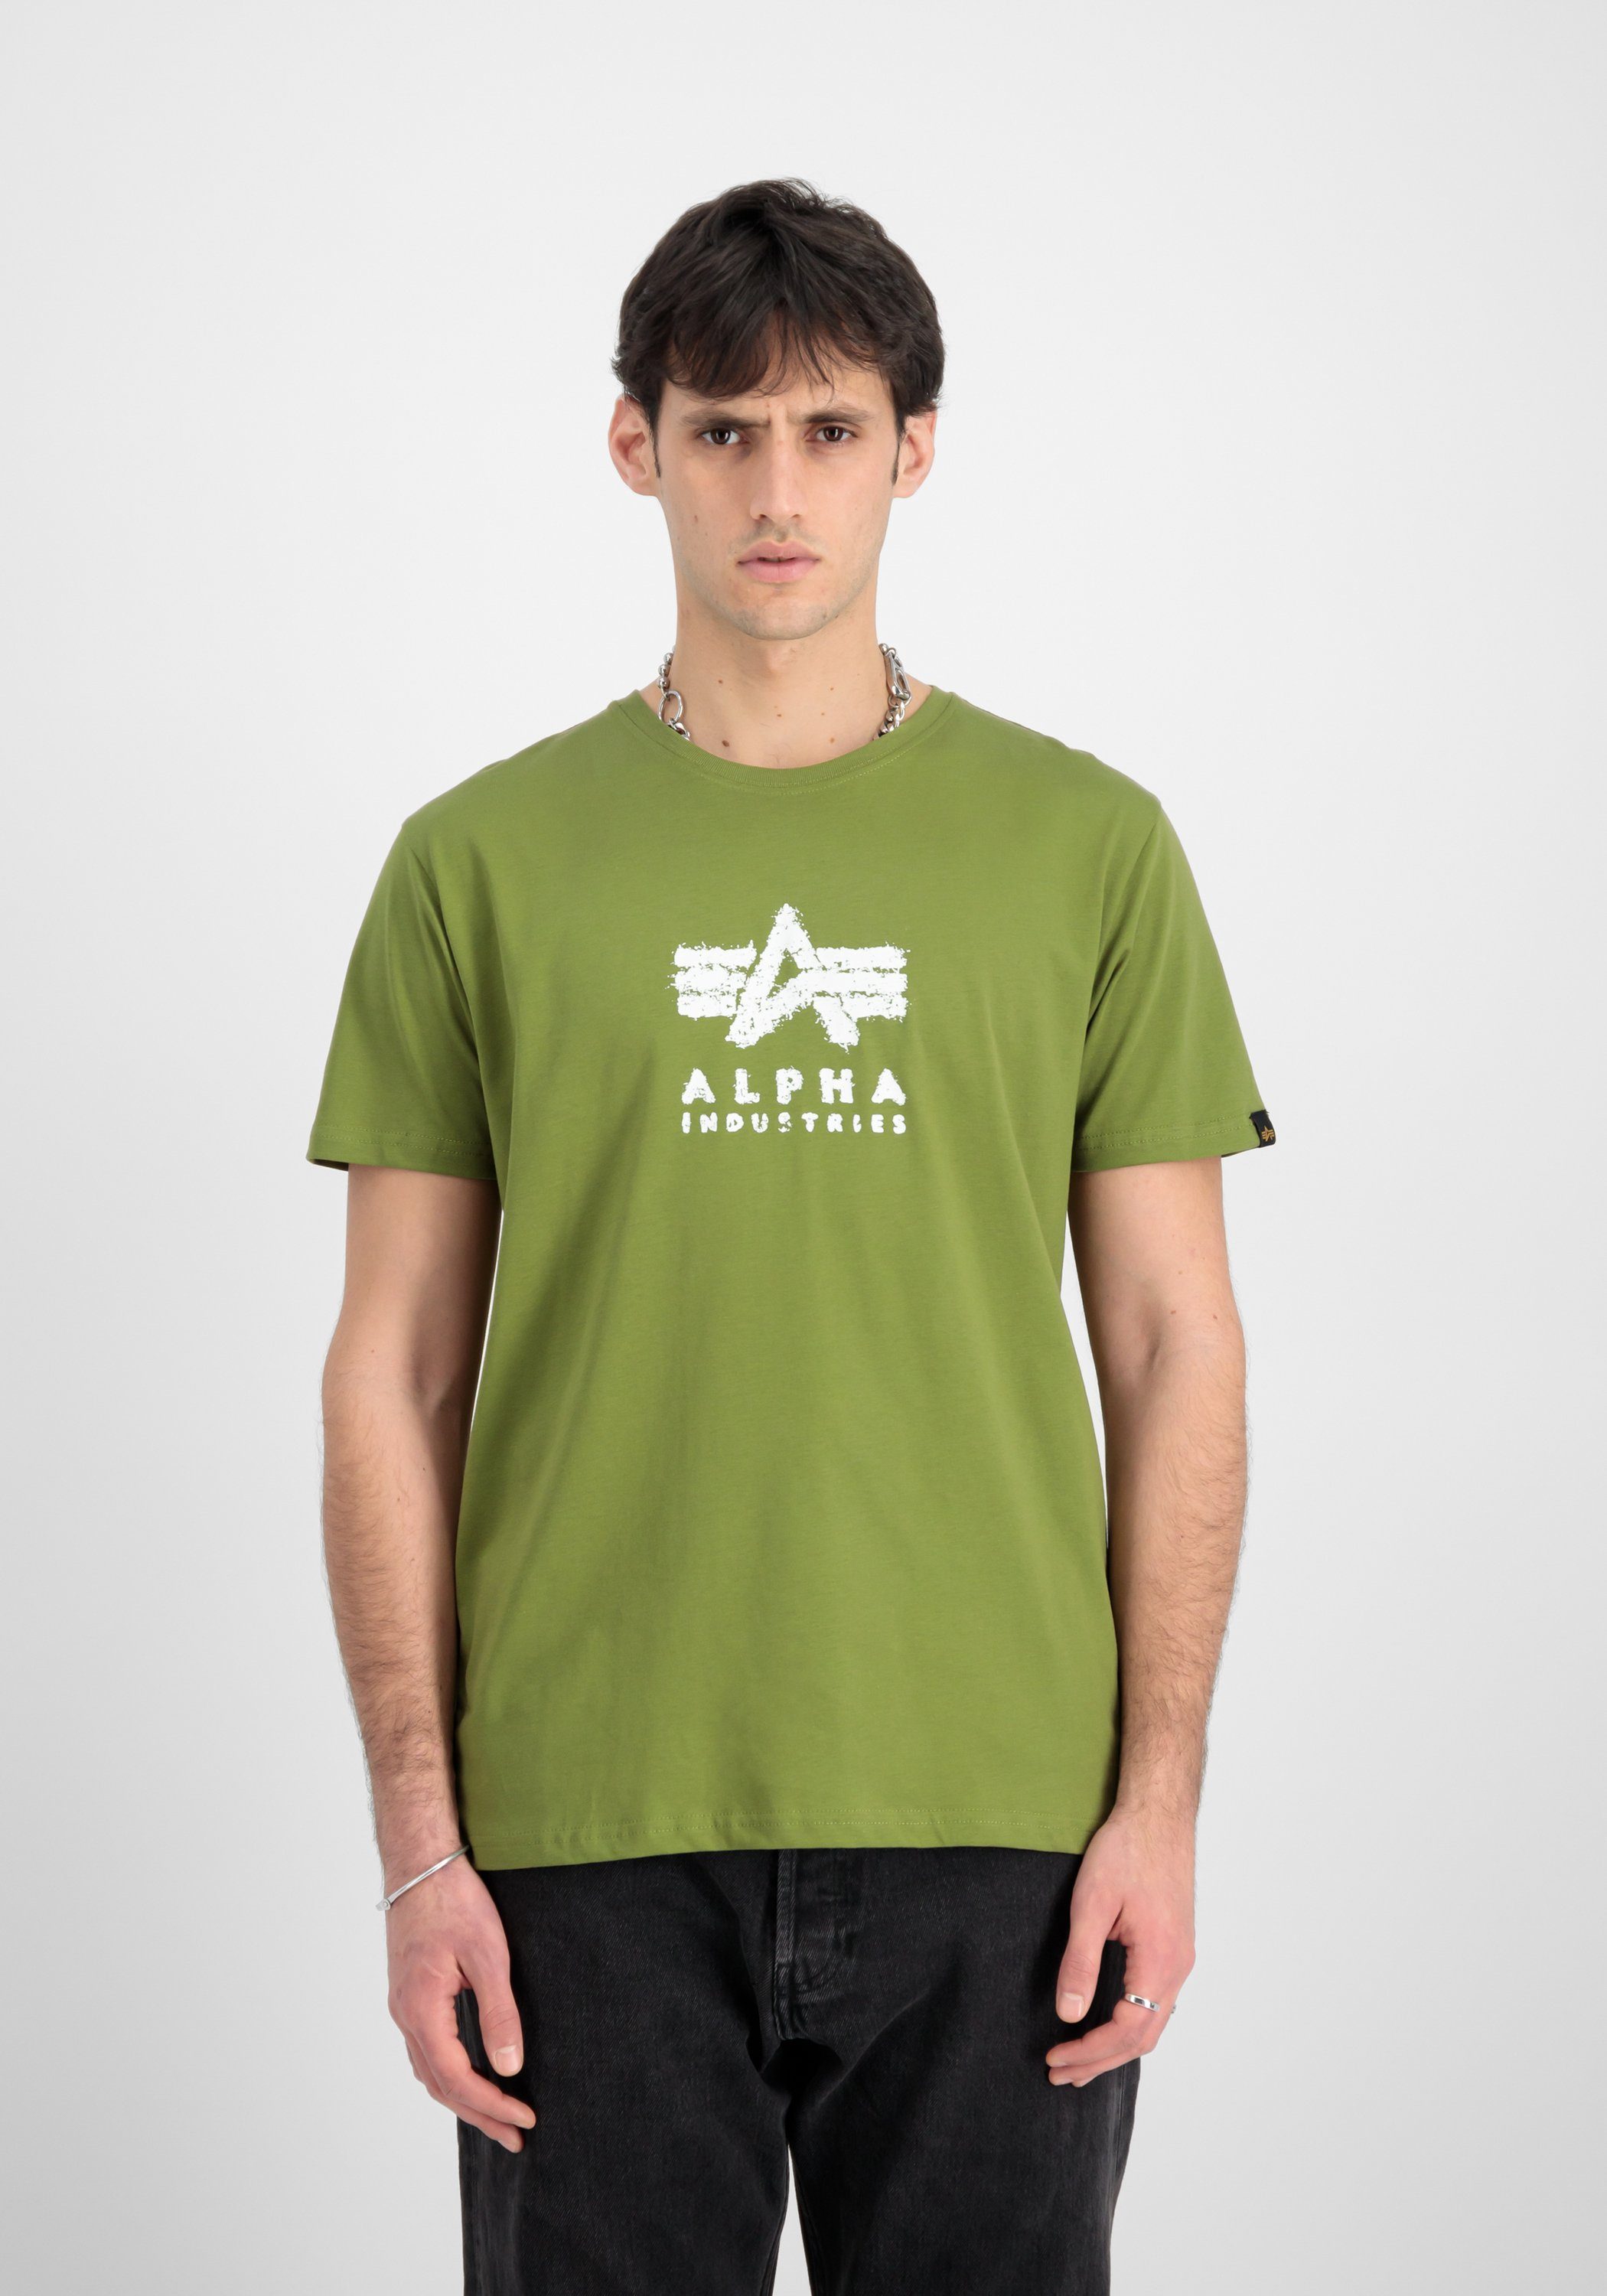 Alpha Industries T-shirt Men T-Shirts Grunge Logo T